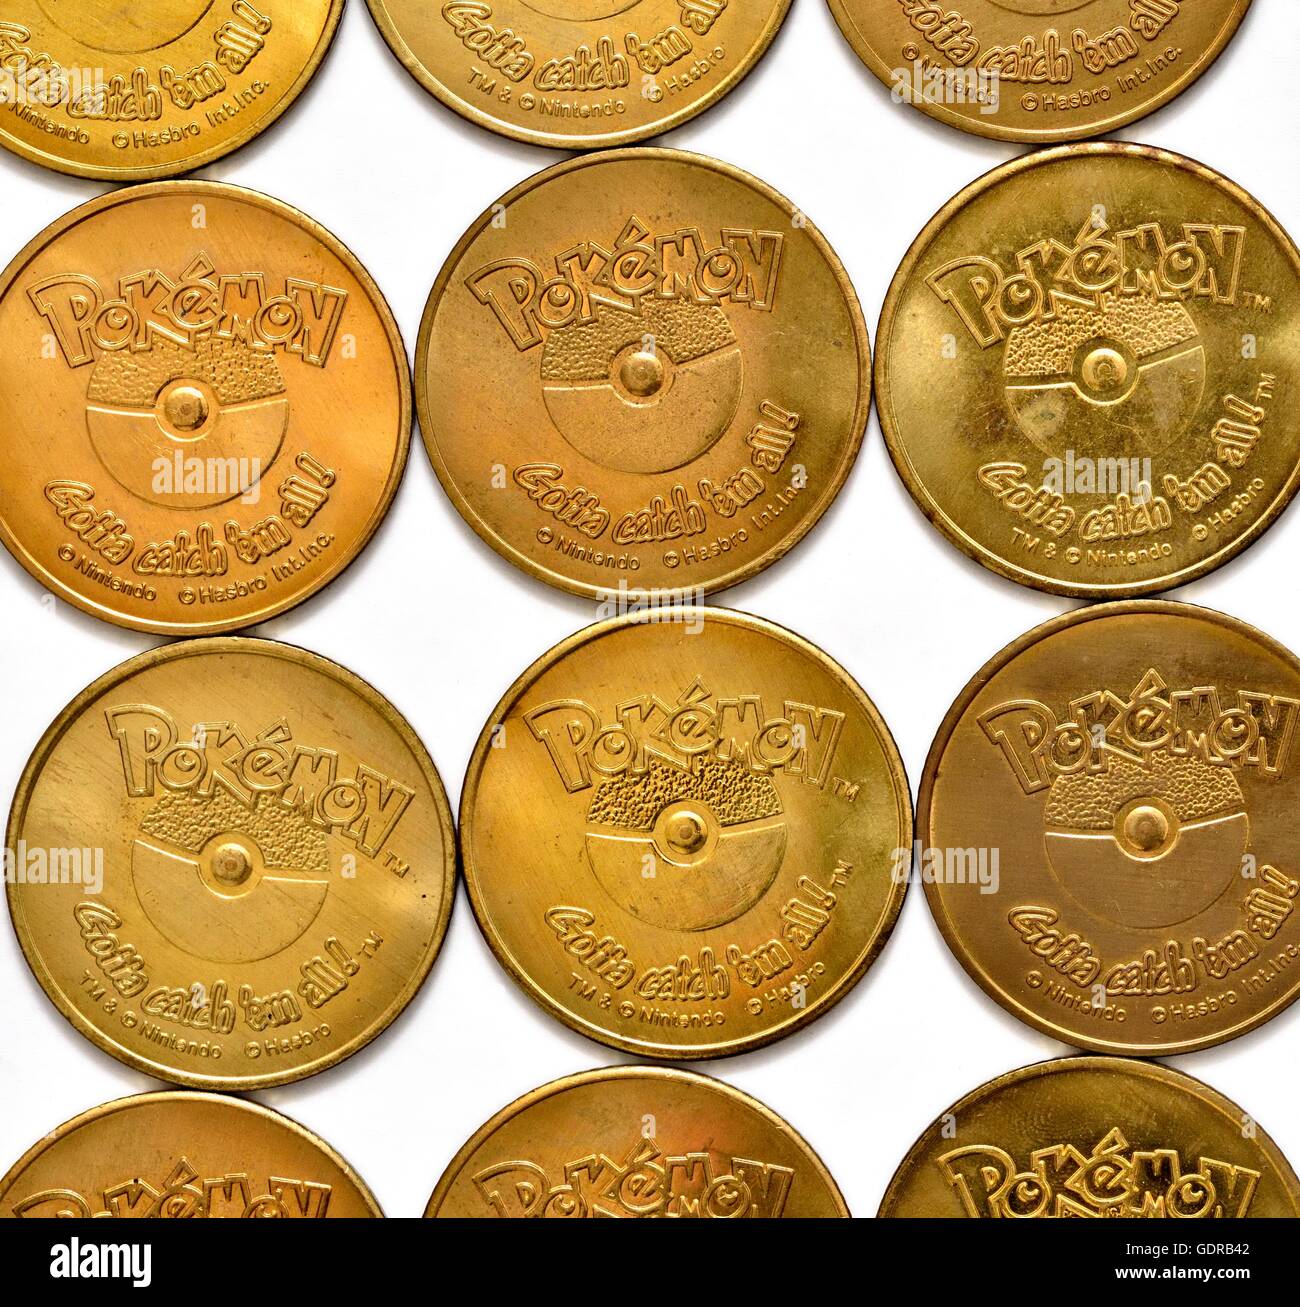 Pokemon coins immagini e fotografie stock ad alta risoluzione - Alamy